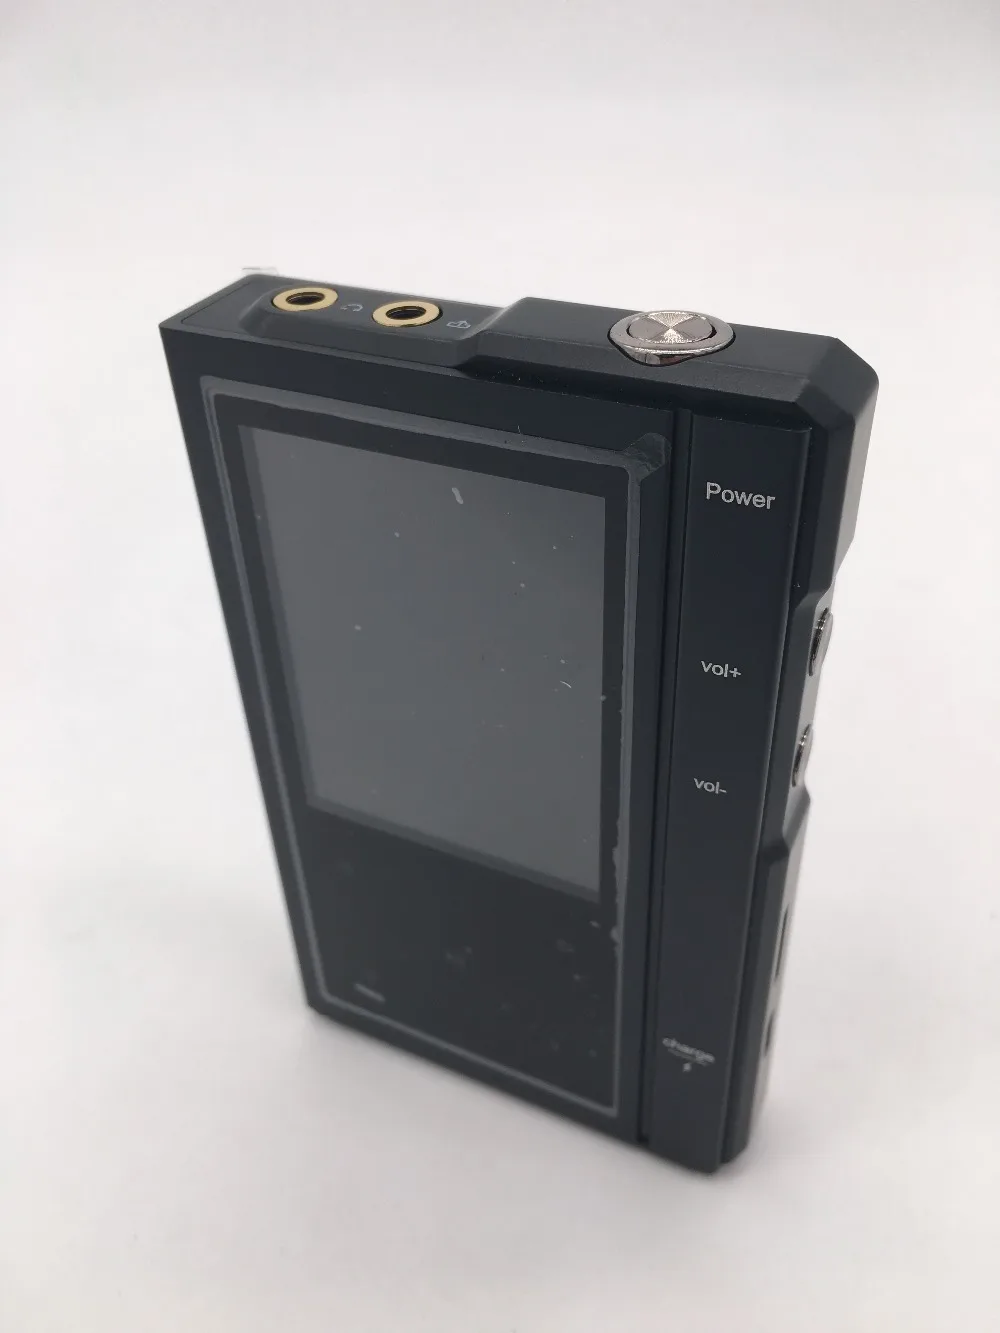 Moonlight AIGO Z6 PRO MP3-плеер сенсорный экран Hi-Fi DSD портативный без потерь цифровой музыкальный проигрыватель двухъядерный процессор с кожаным чехлом